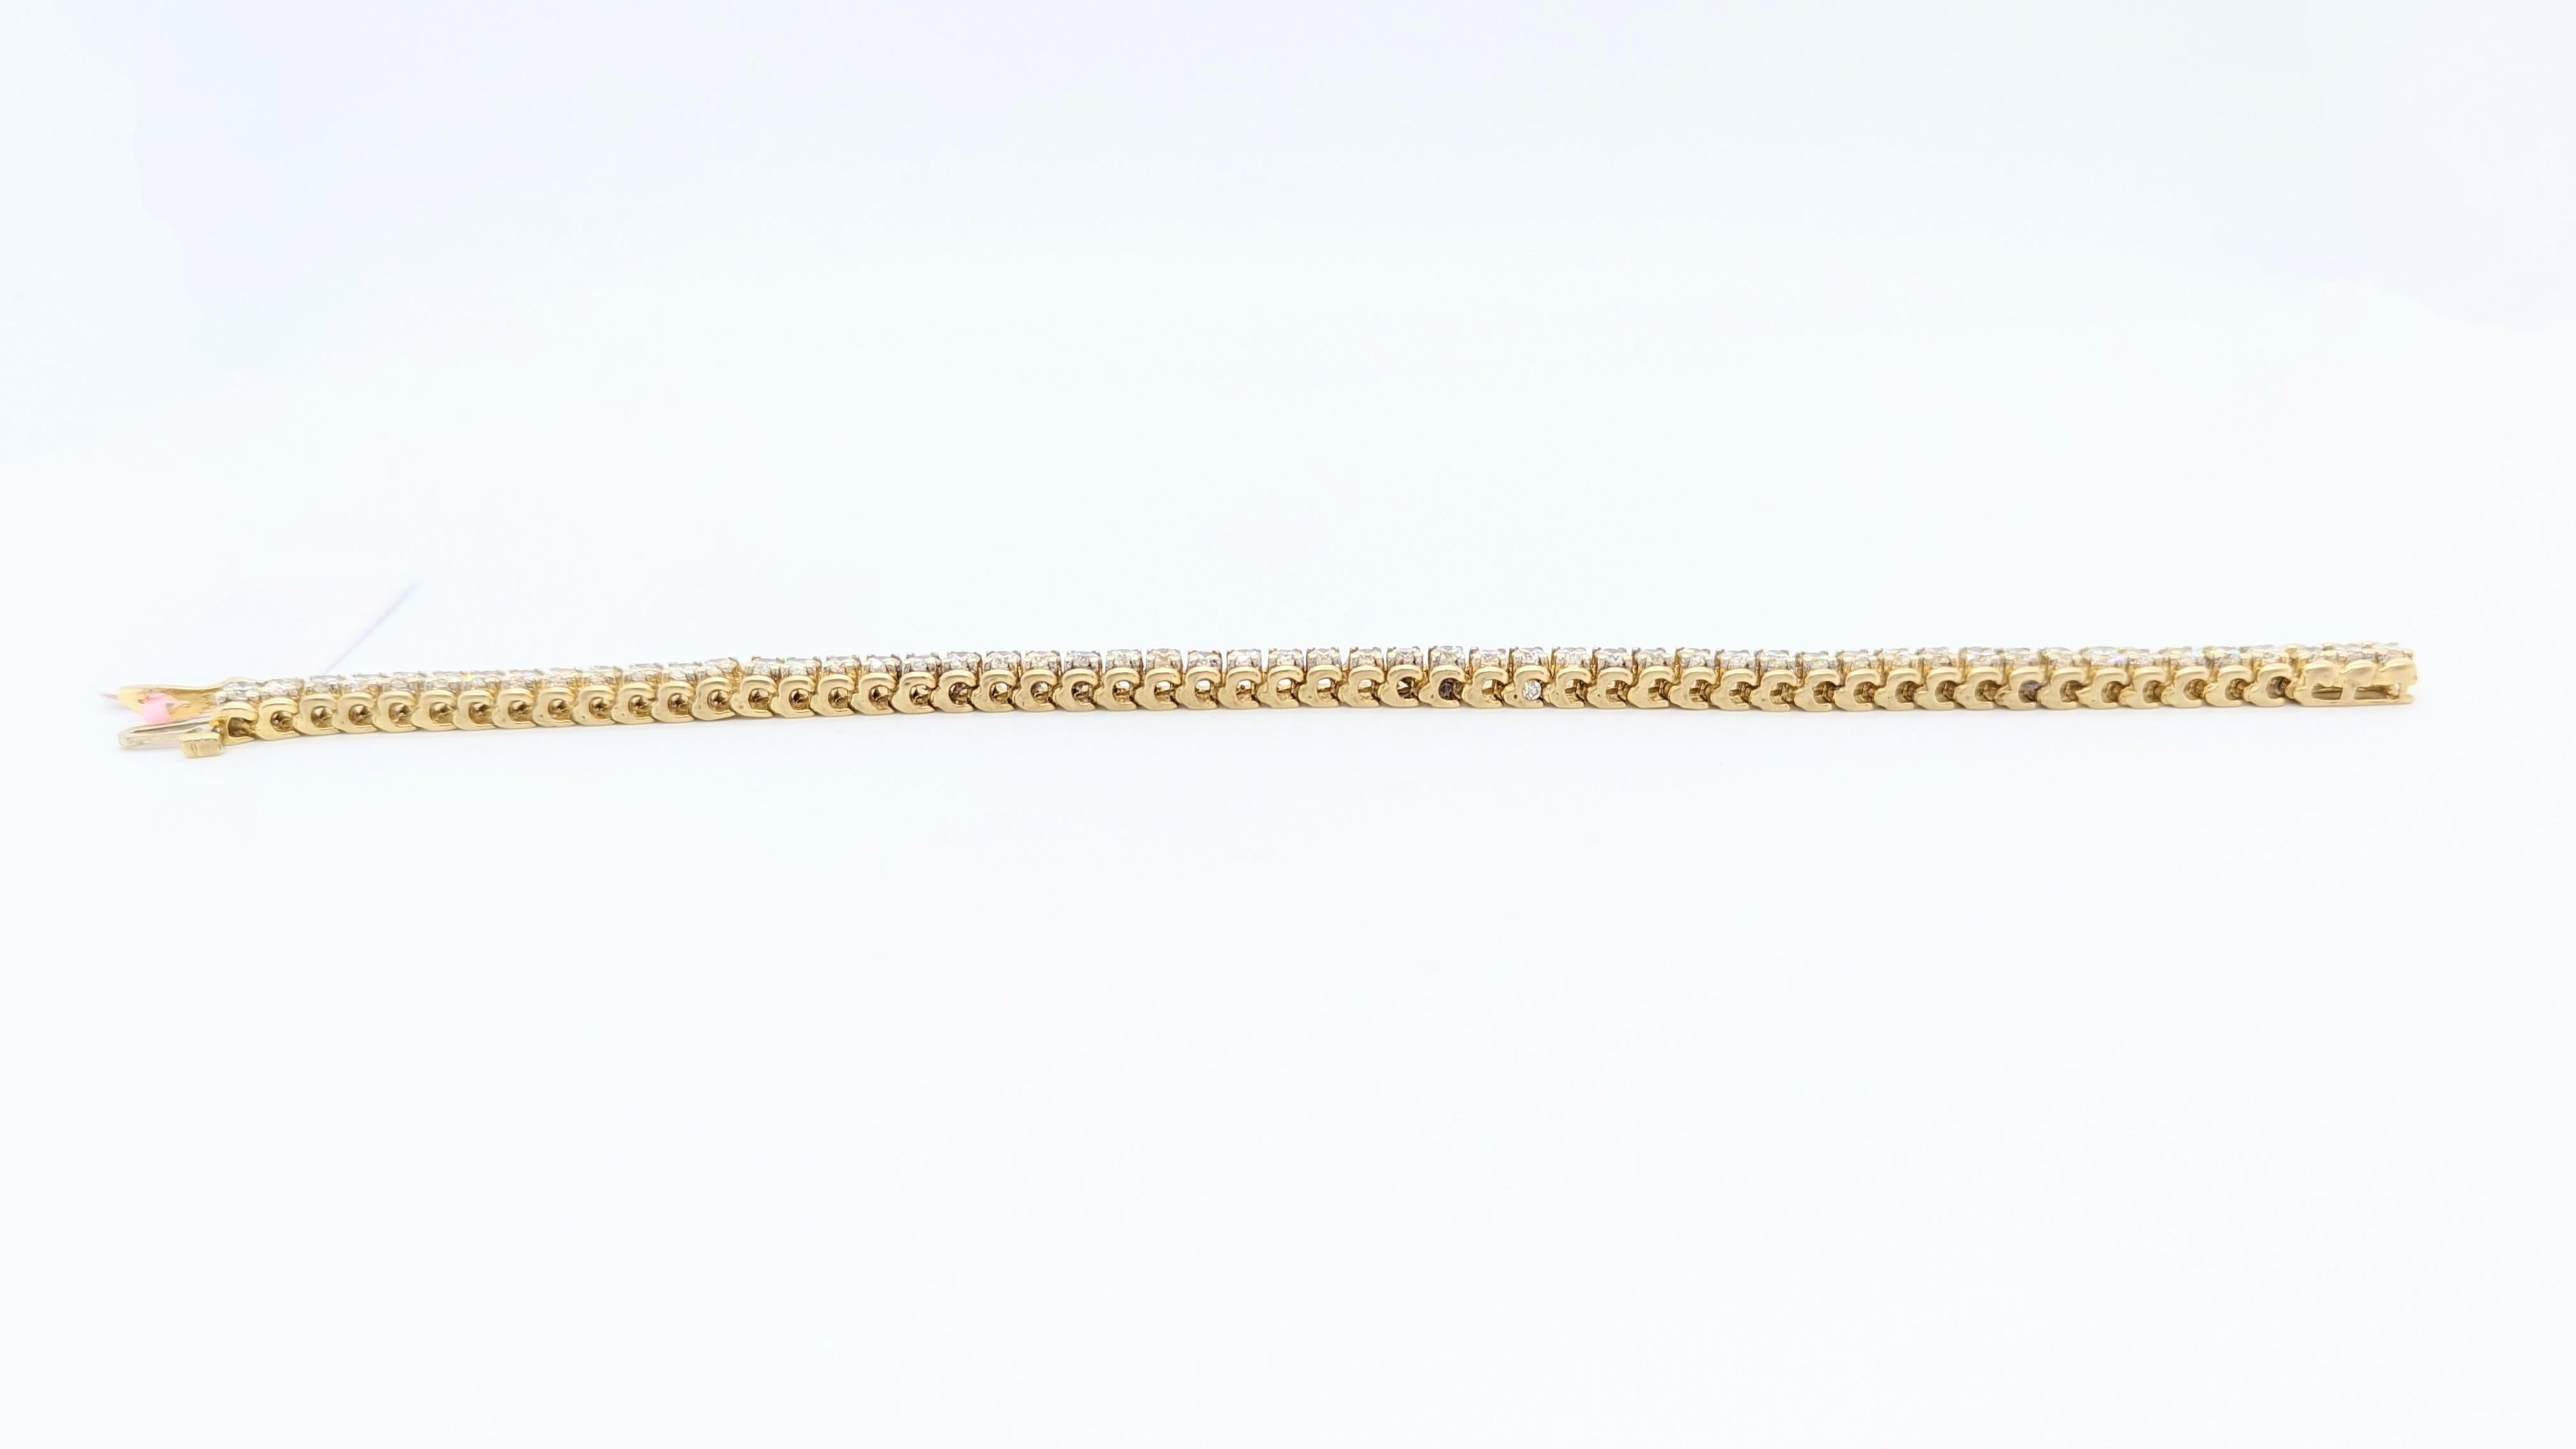 Magnifique bracelet rond en diamant blanc avec 54 pierres brillantes de bonne qualité.  Fabriqué à la main en or jaune 14k.  La longueur est de 7